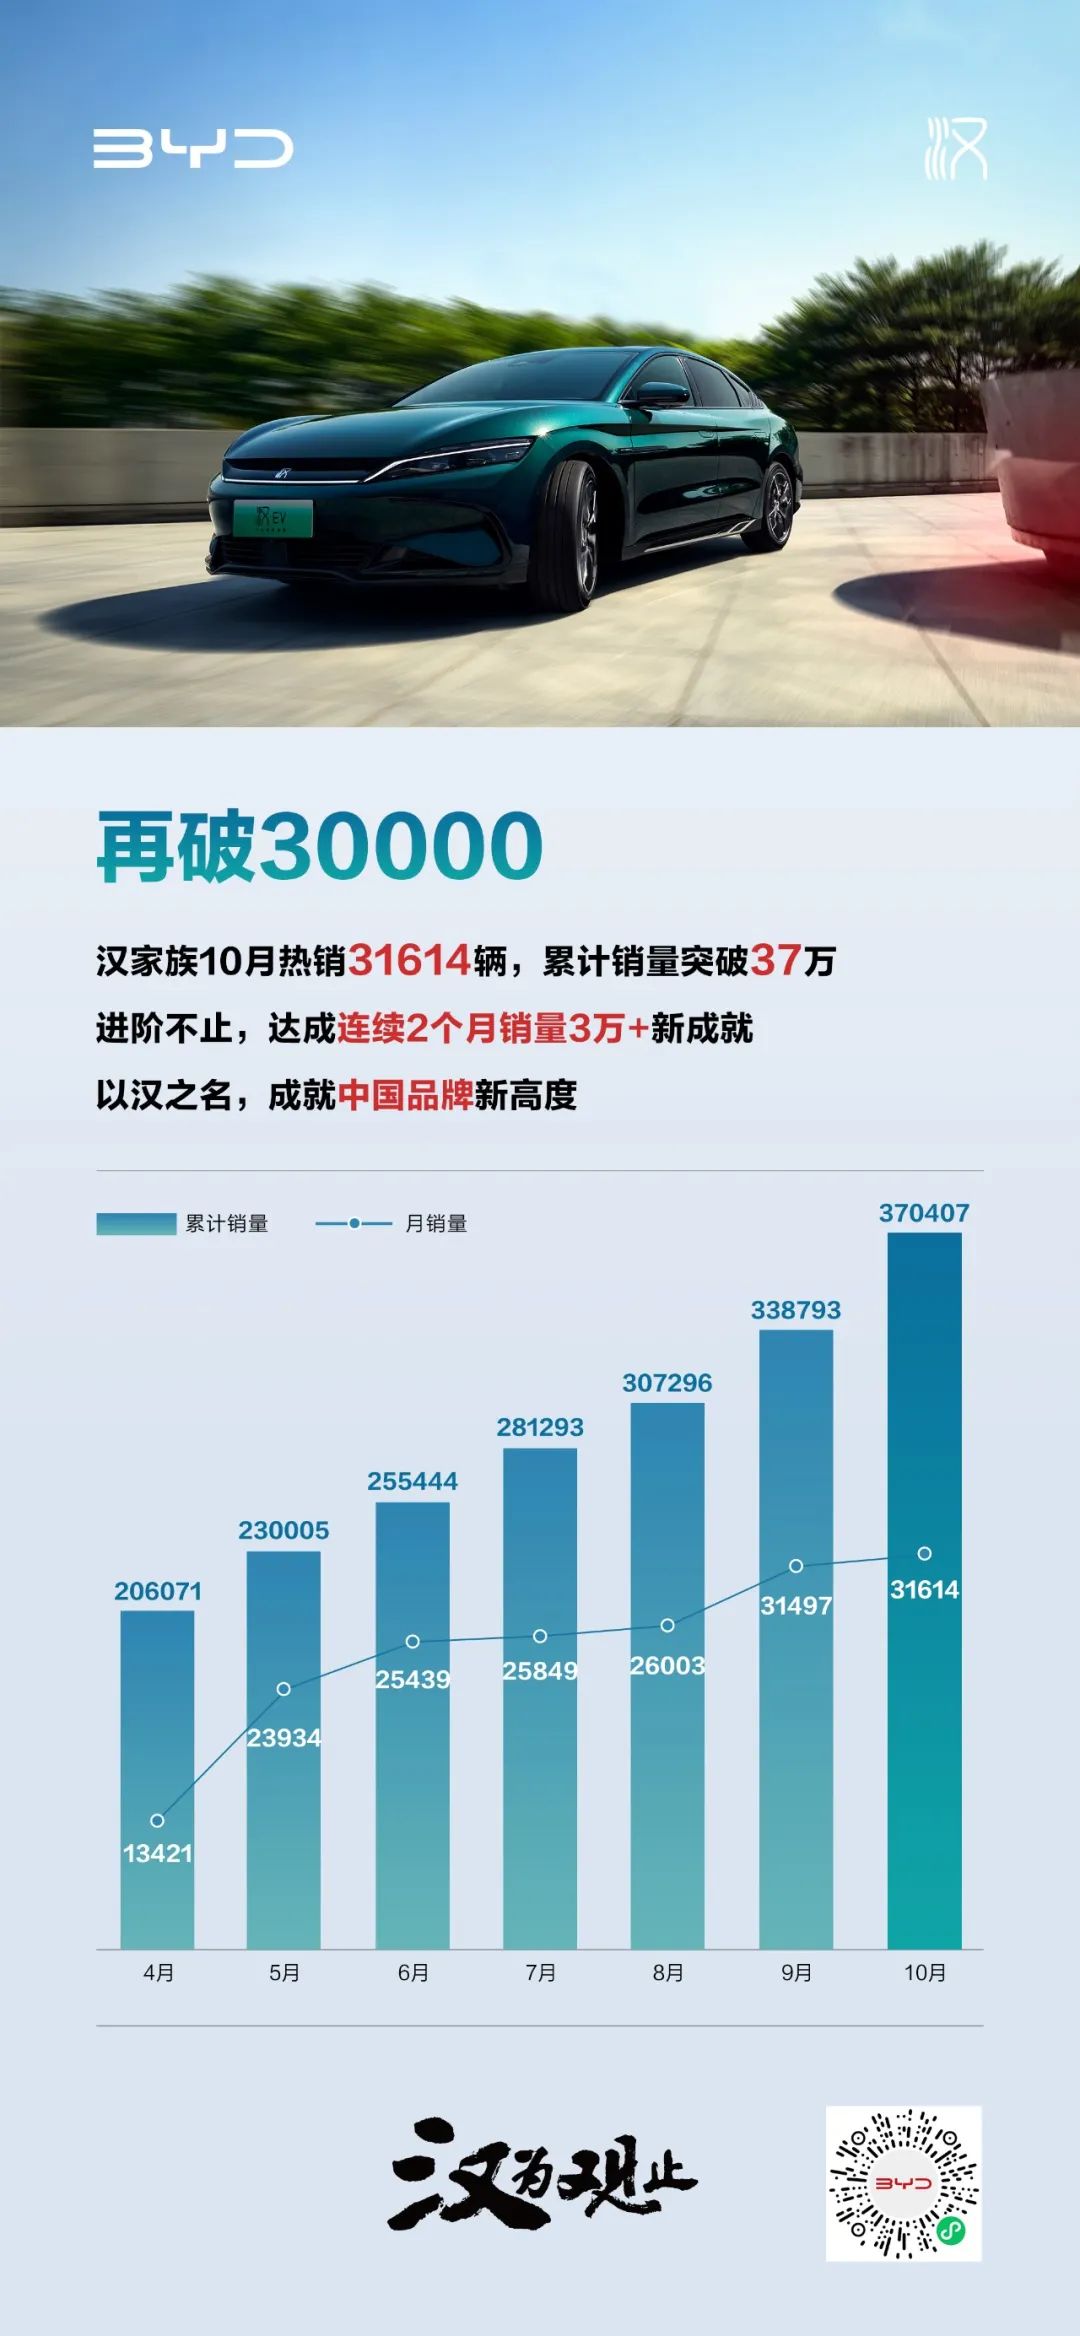 汉家族10月热销31614辆，达成连续2个月销量3万+新成就